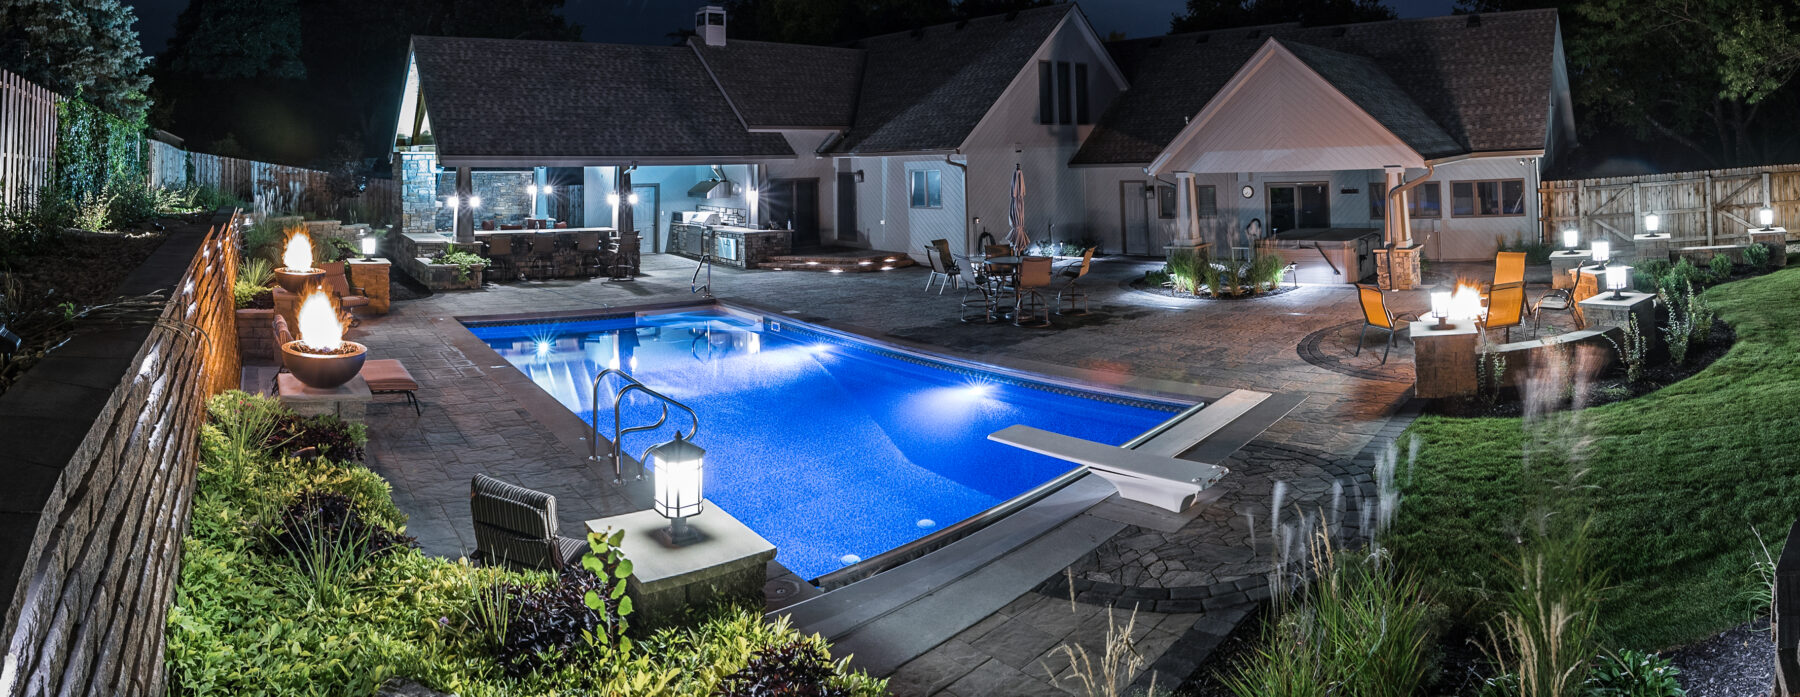 backyard pool with LED lighting at night